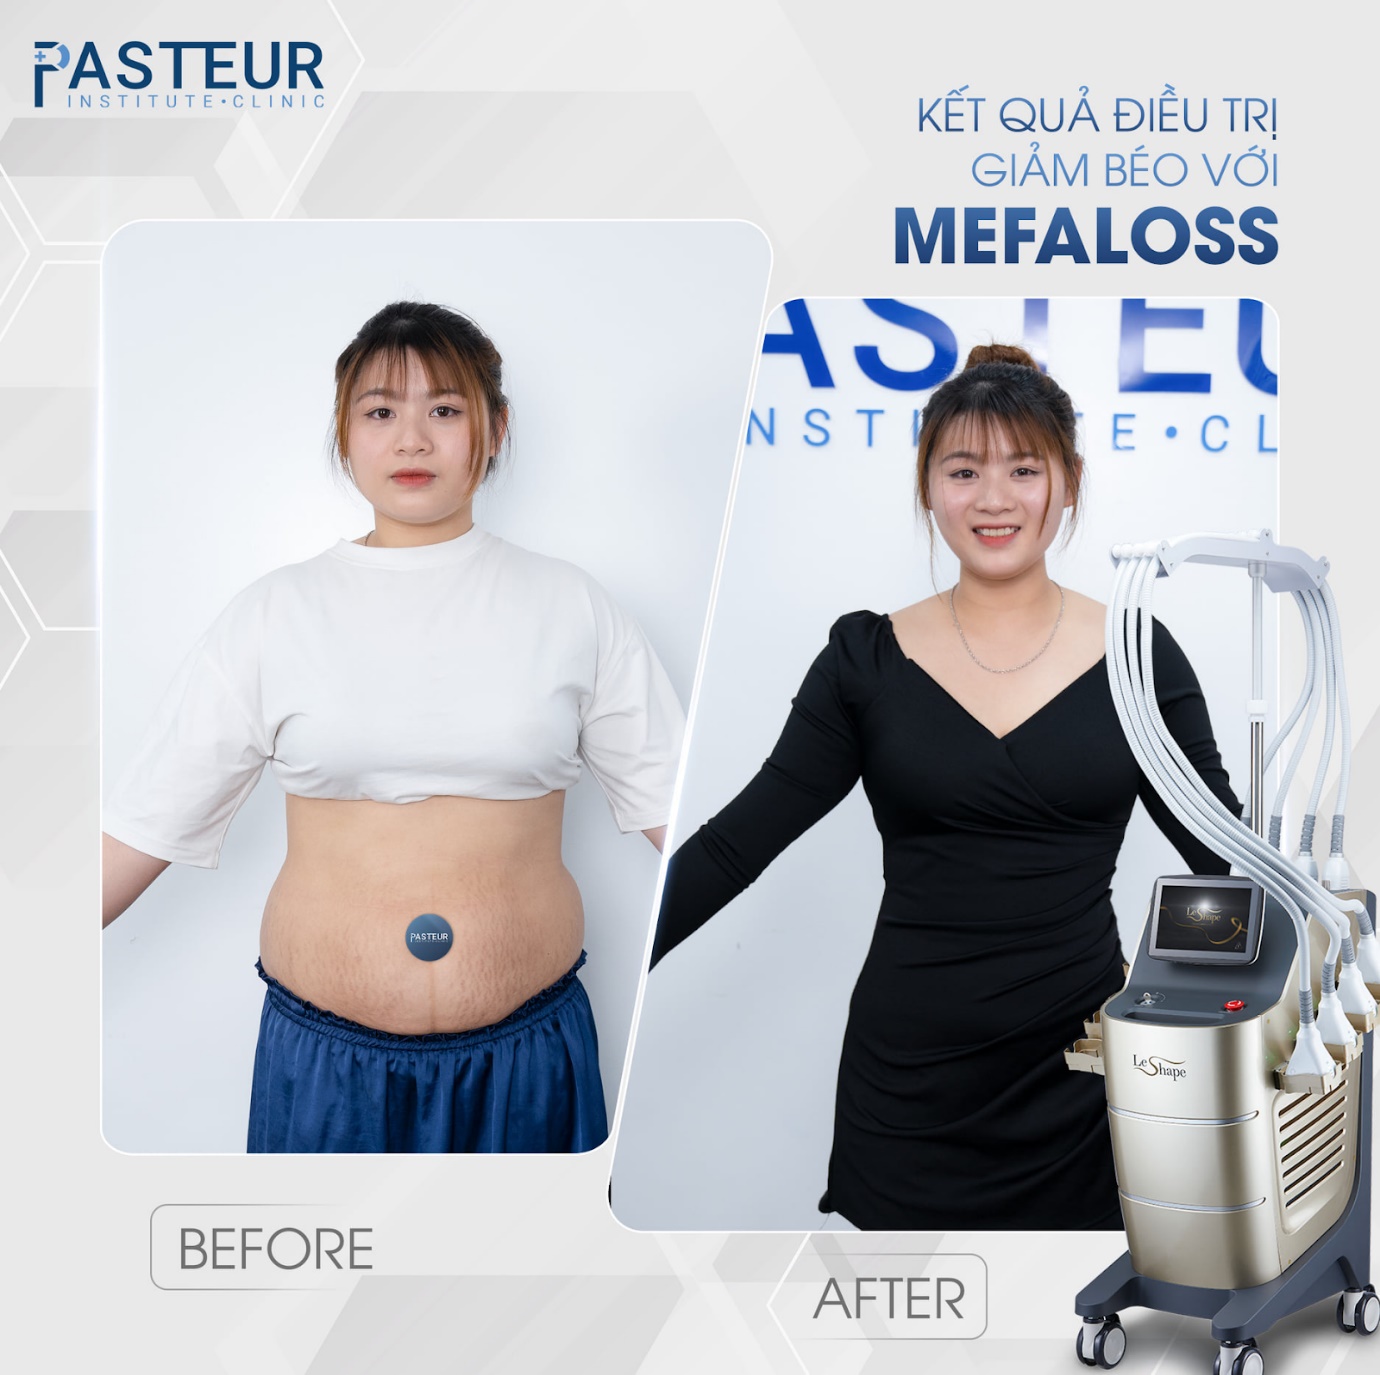 Trải nghiệm công nghệ giảm mỡ hiện đại chuẩn y khoa tại Viện giảm béo Pasteur - 4